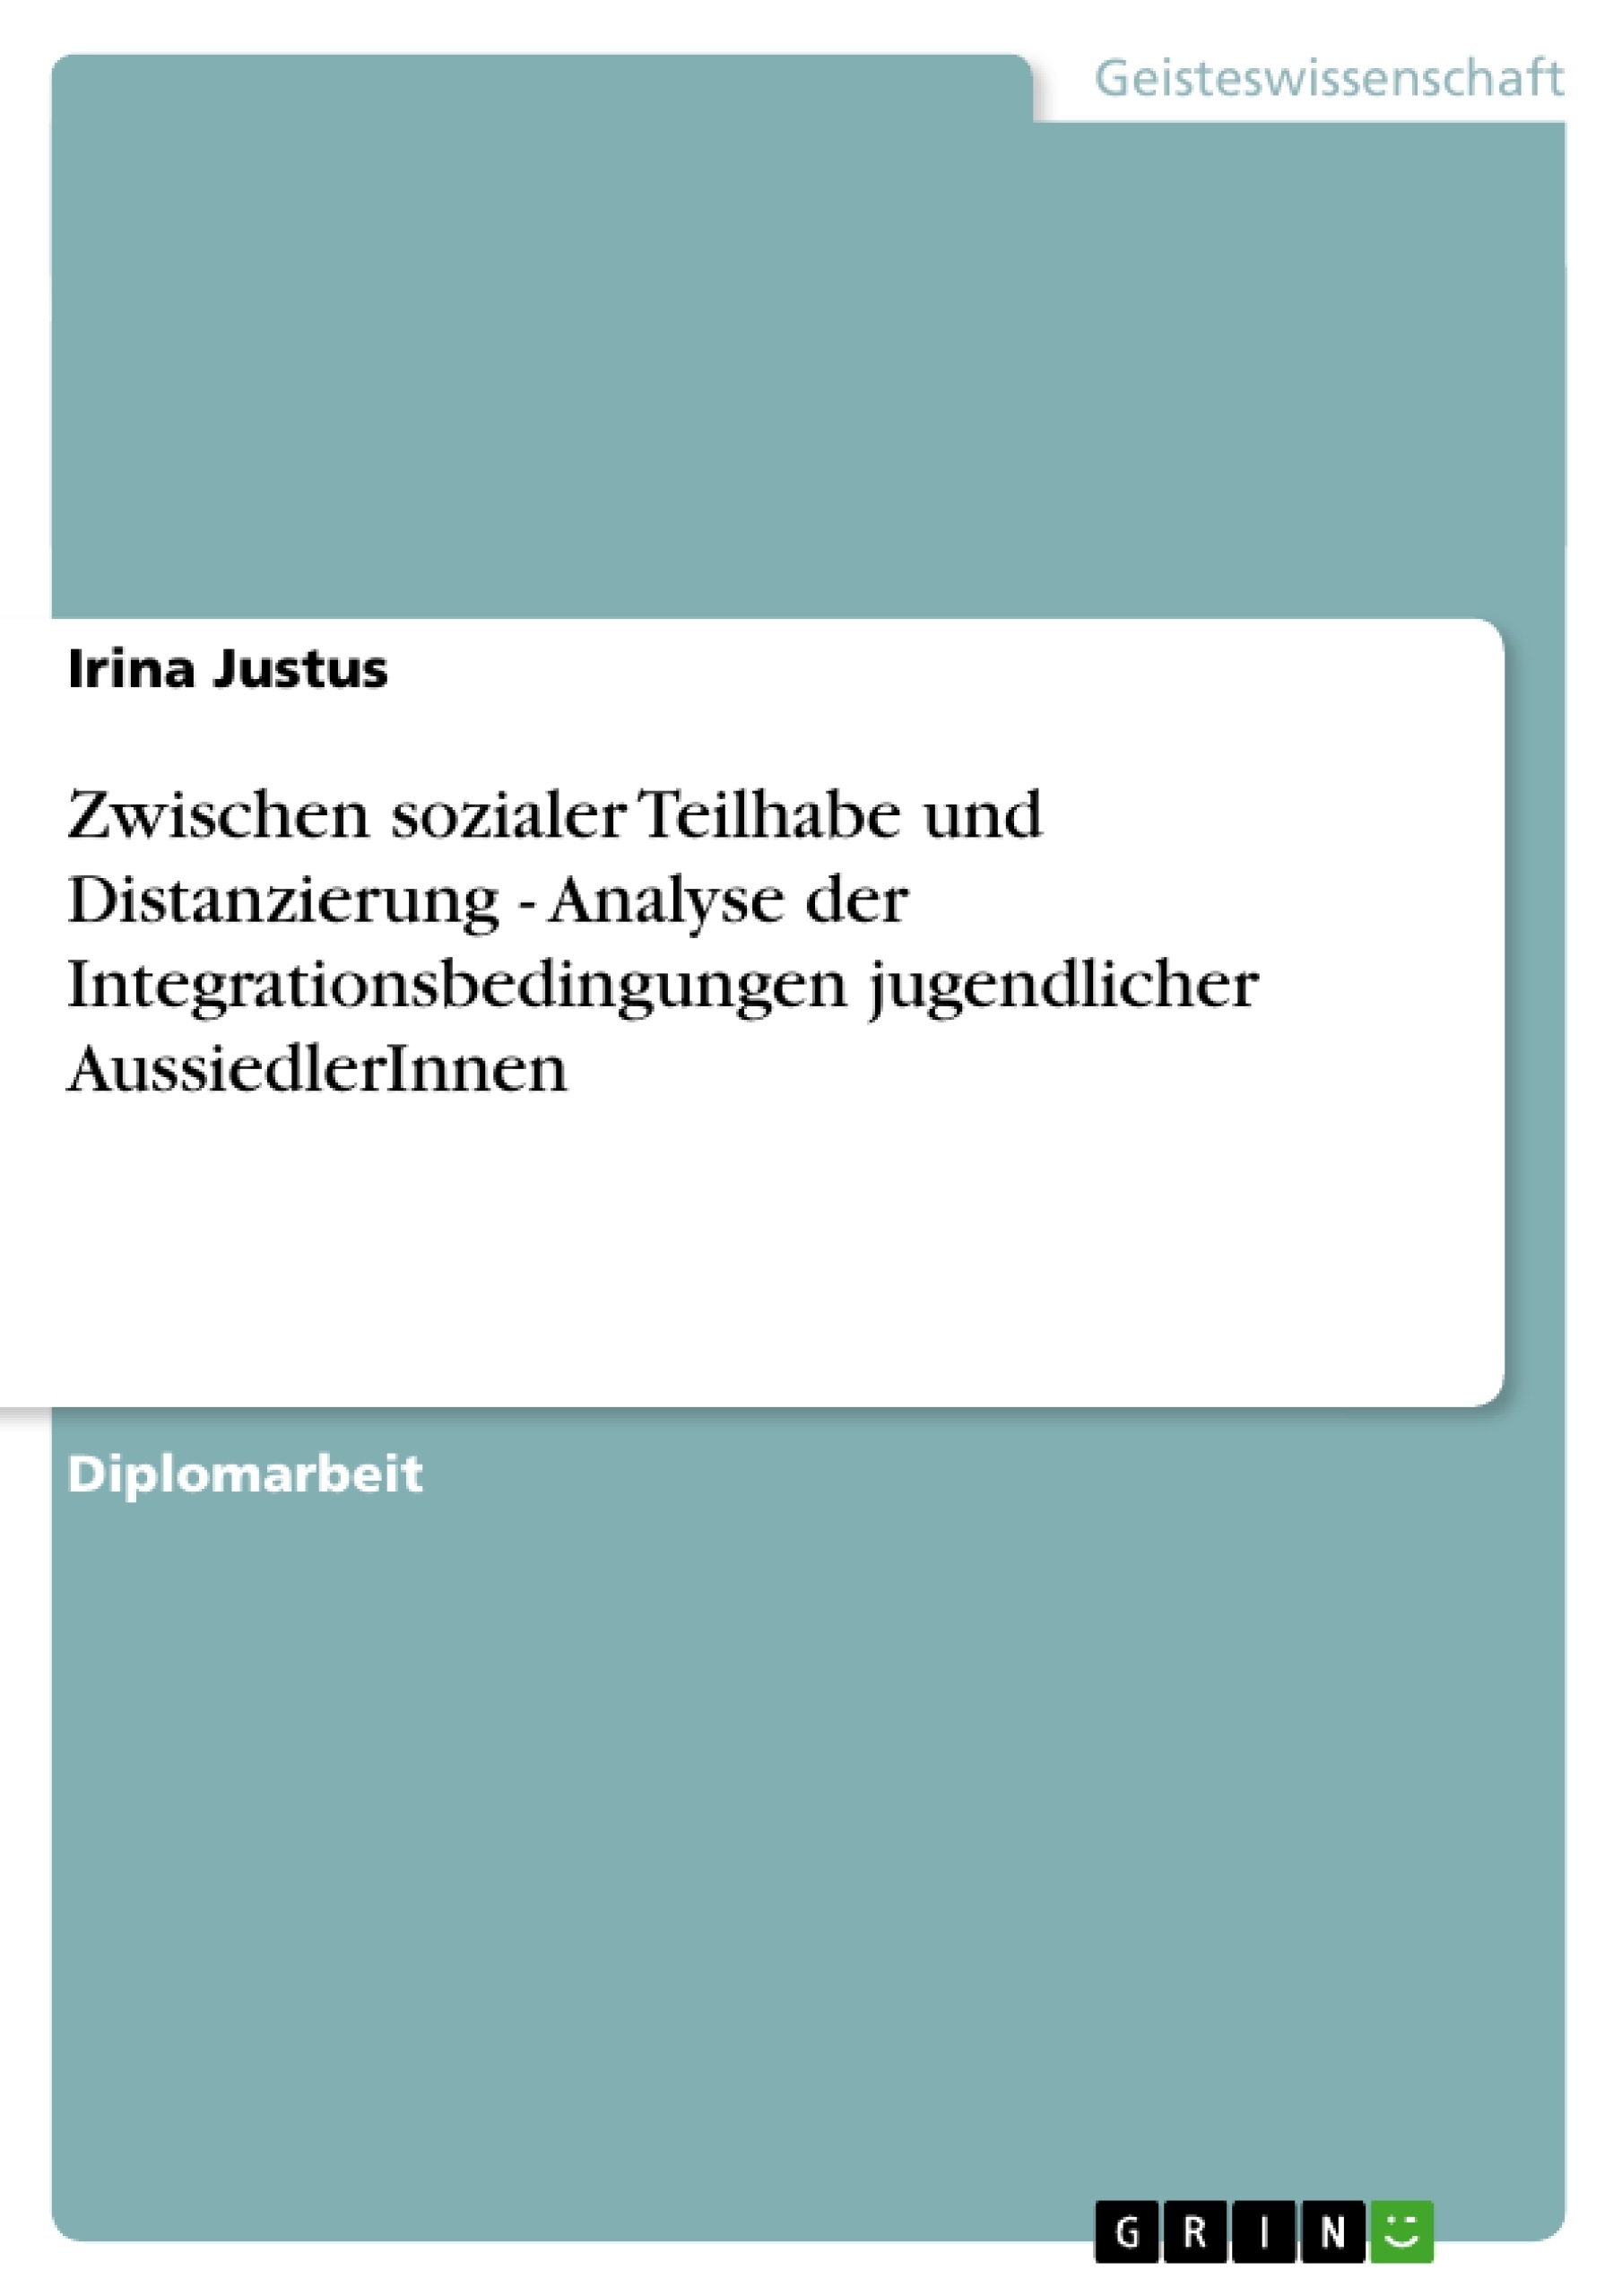 Title: Zwischen sozialer Teilhabe und Distanzierung - Analyse der Integrationsbedingungen jugendlicher AussiedlerInnen